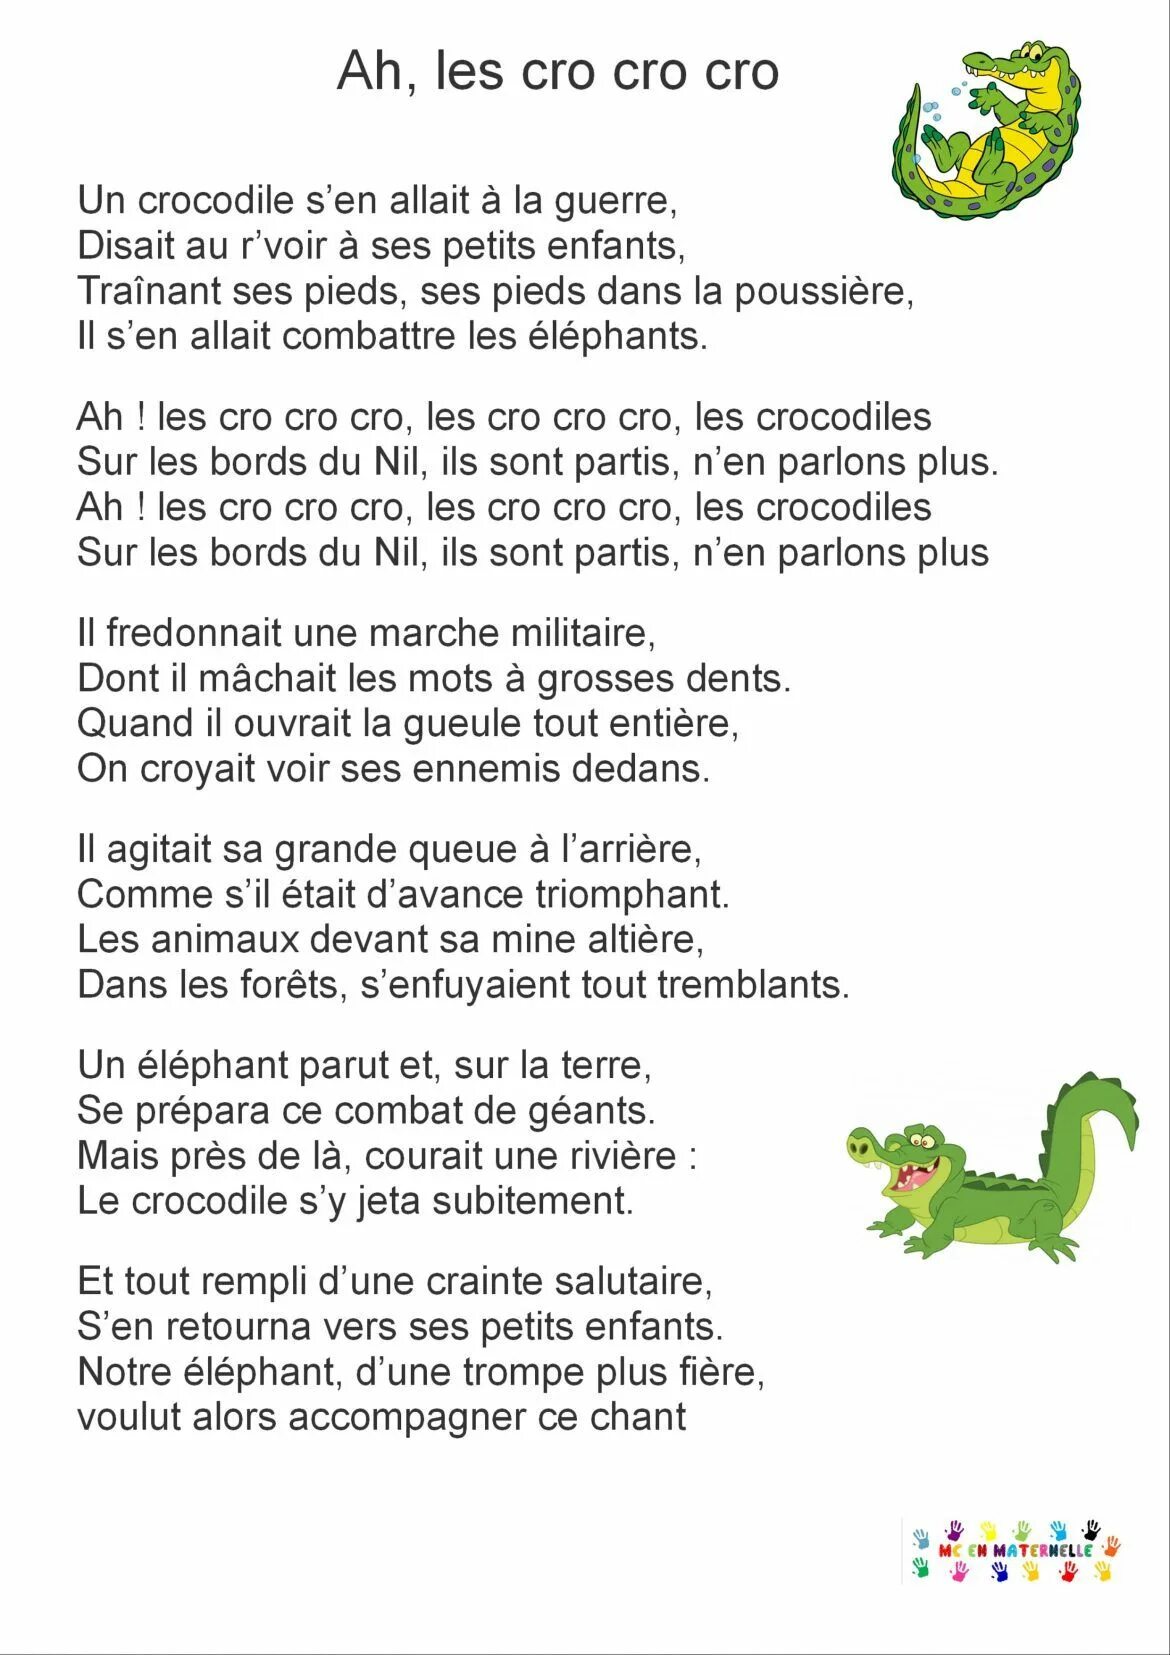 Песня про крокодила текст. Текст про крокодила. Песенка про крокодила детская. Слова песни про крокодила.